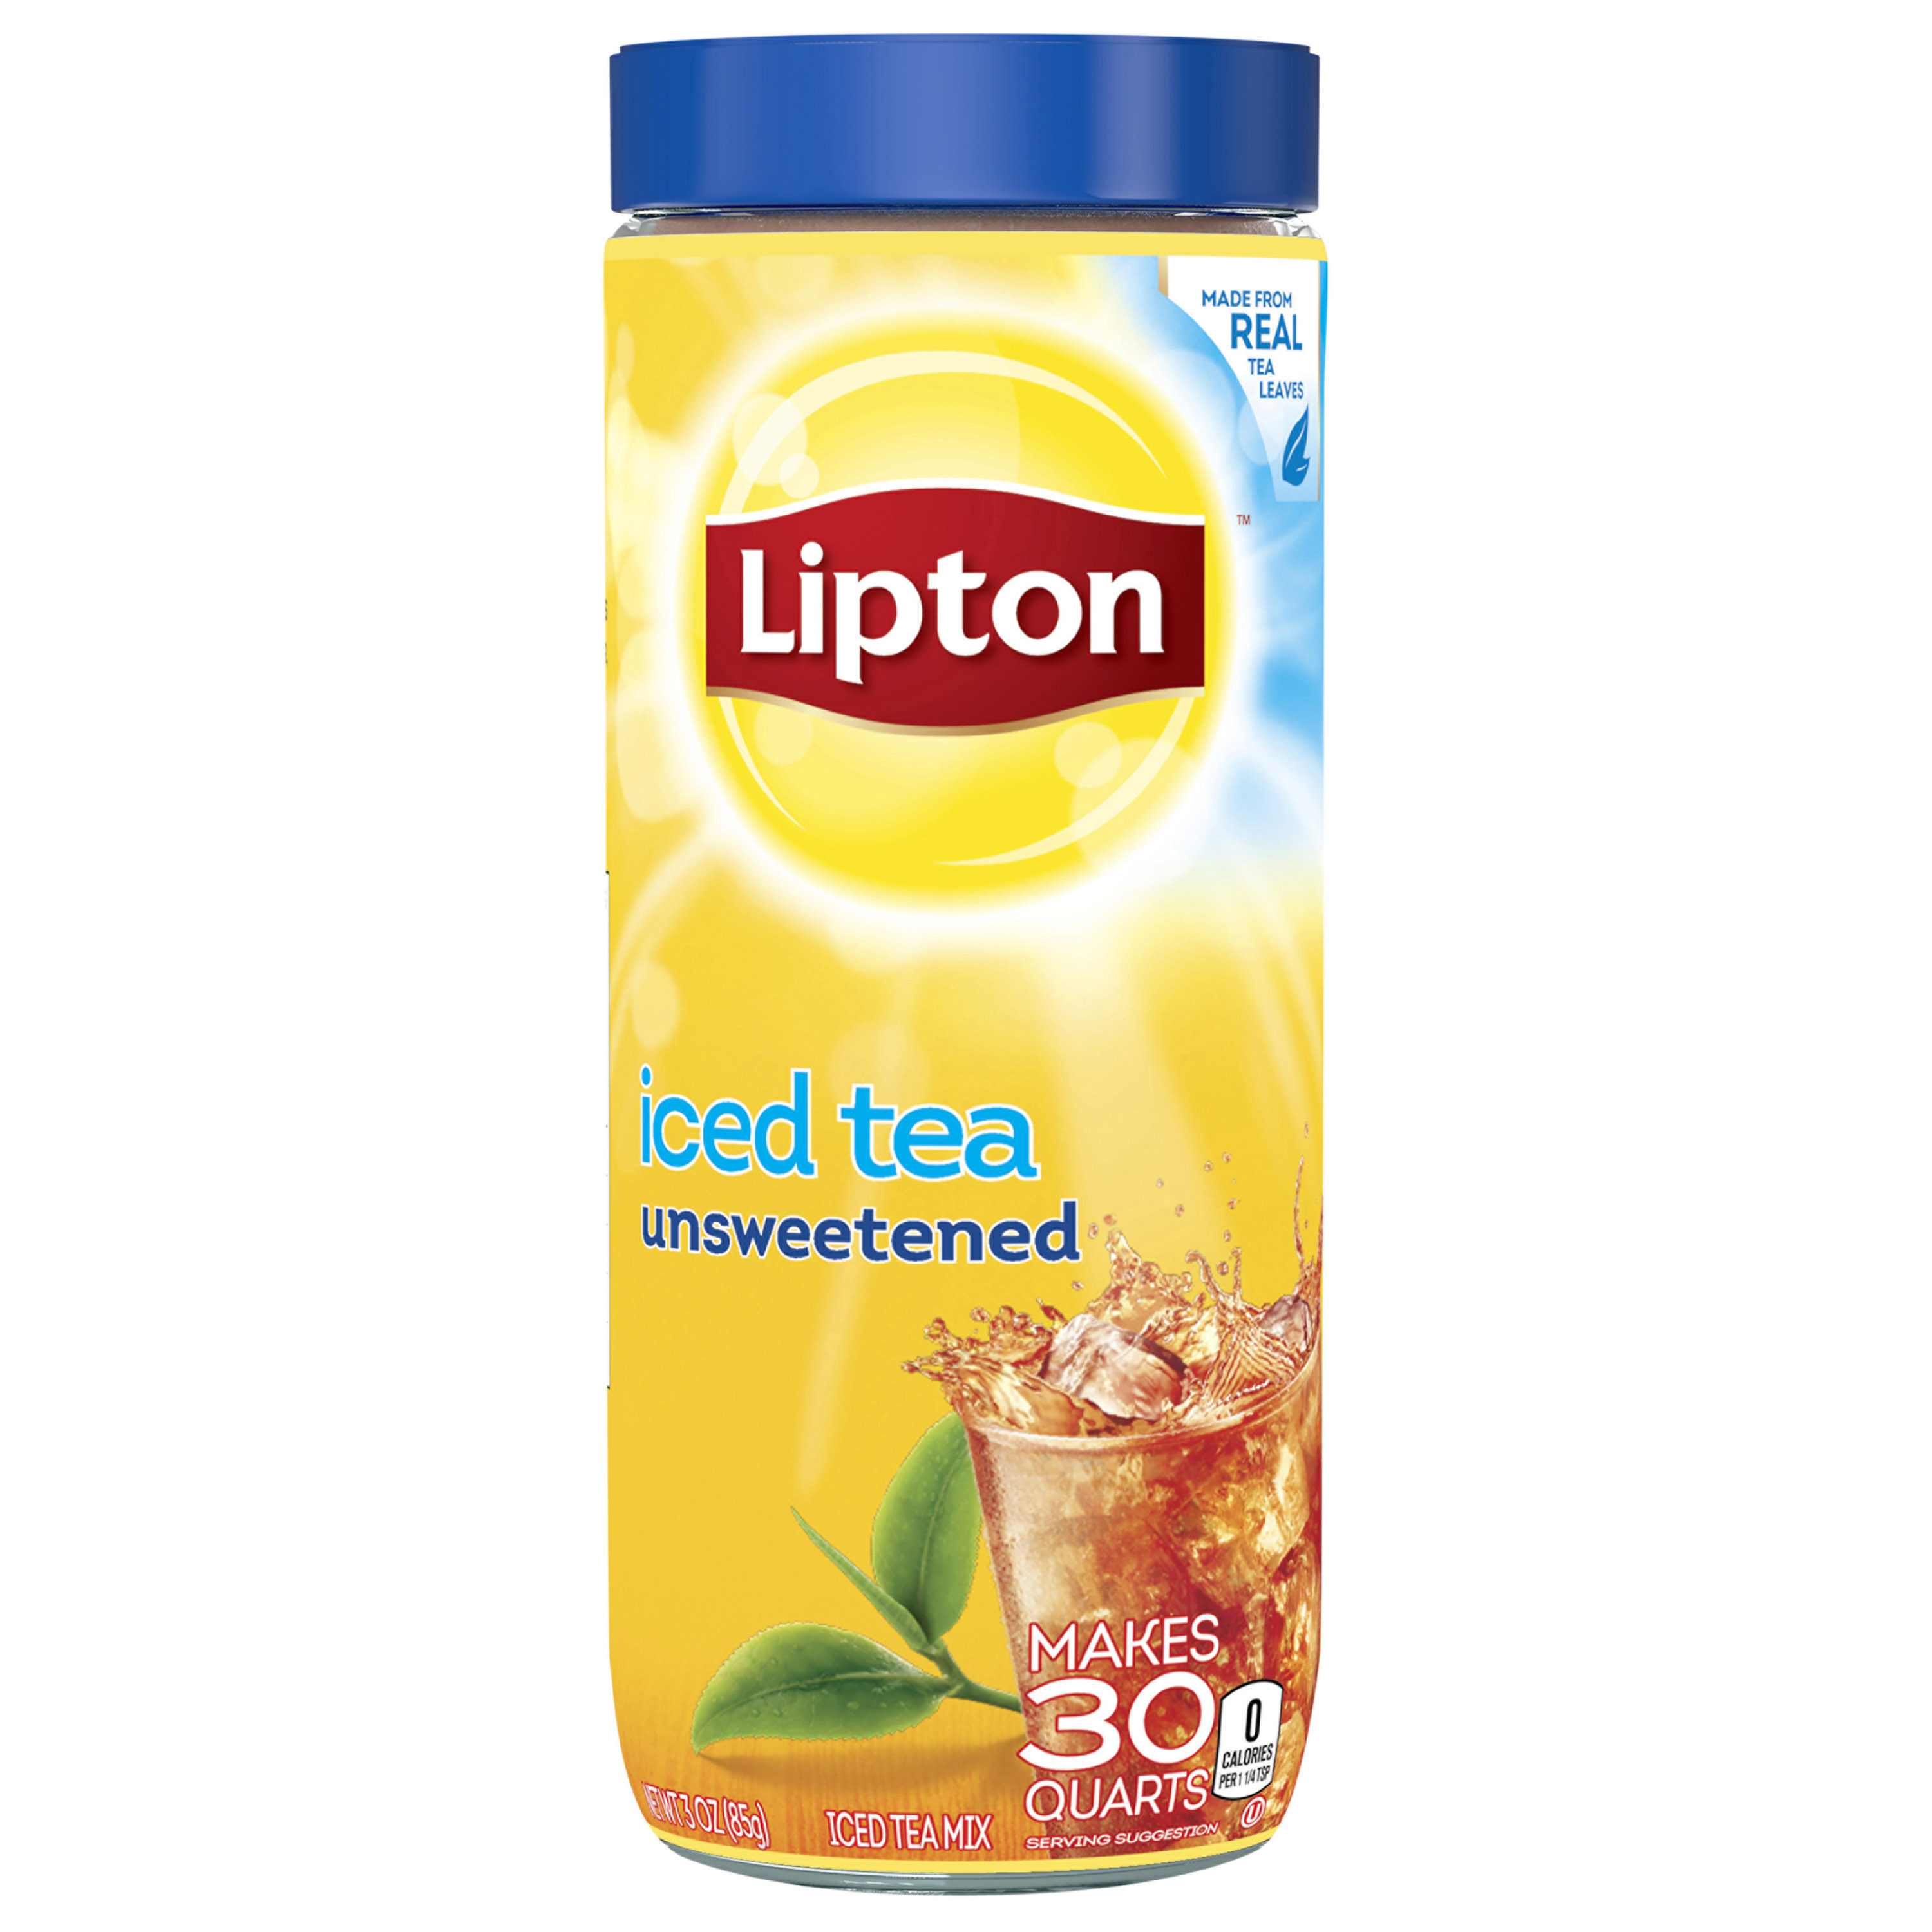 Lipton Iced Tea Mix Black Tea, Caffeinated, Makes 30 Quarts, 3 oz Can - image 1 of 8